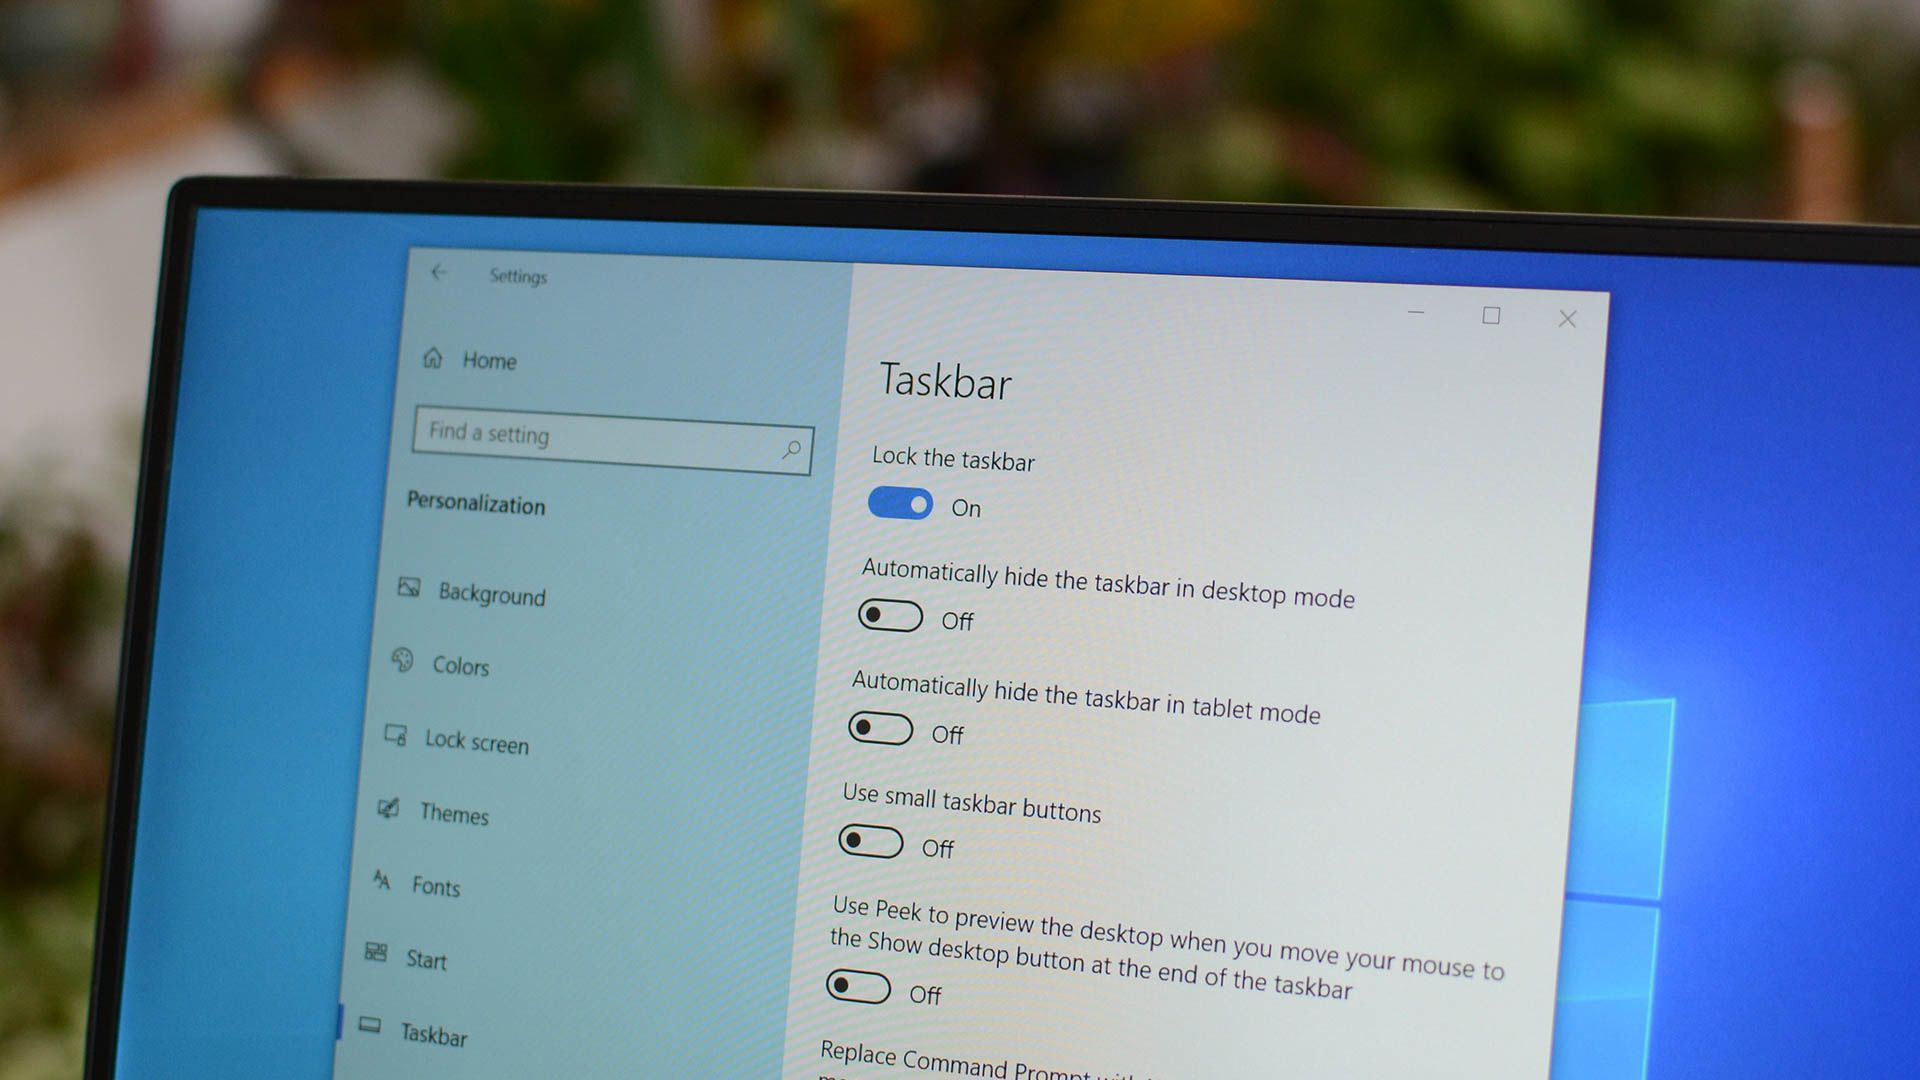 Taskbar Settings on Windows 10. 